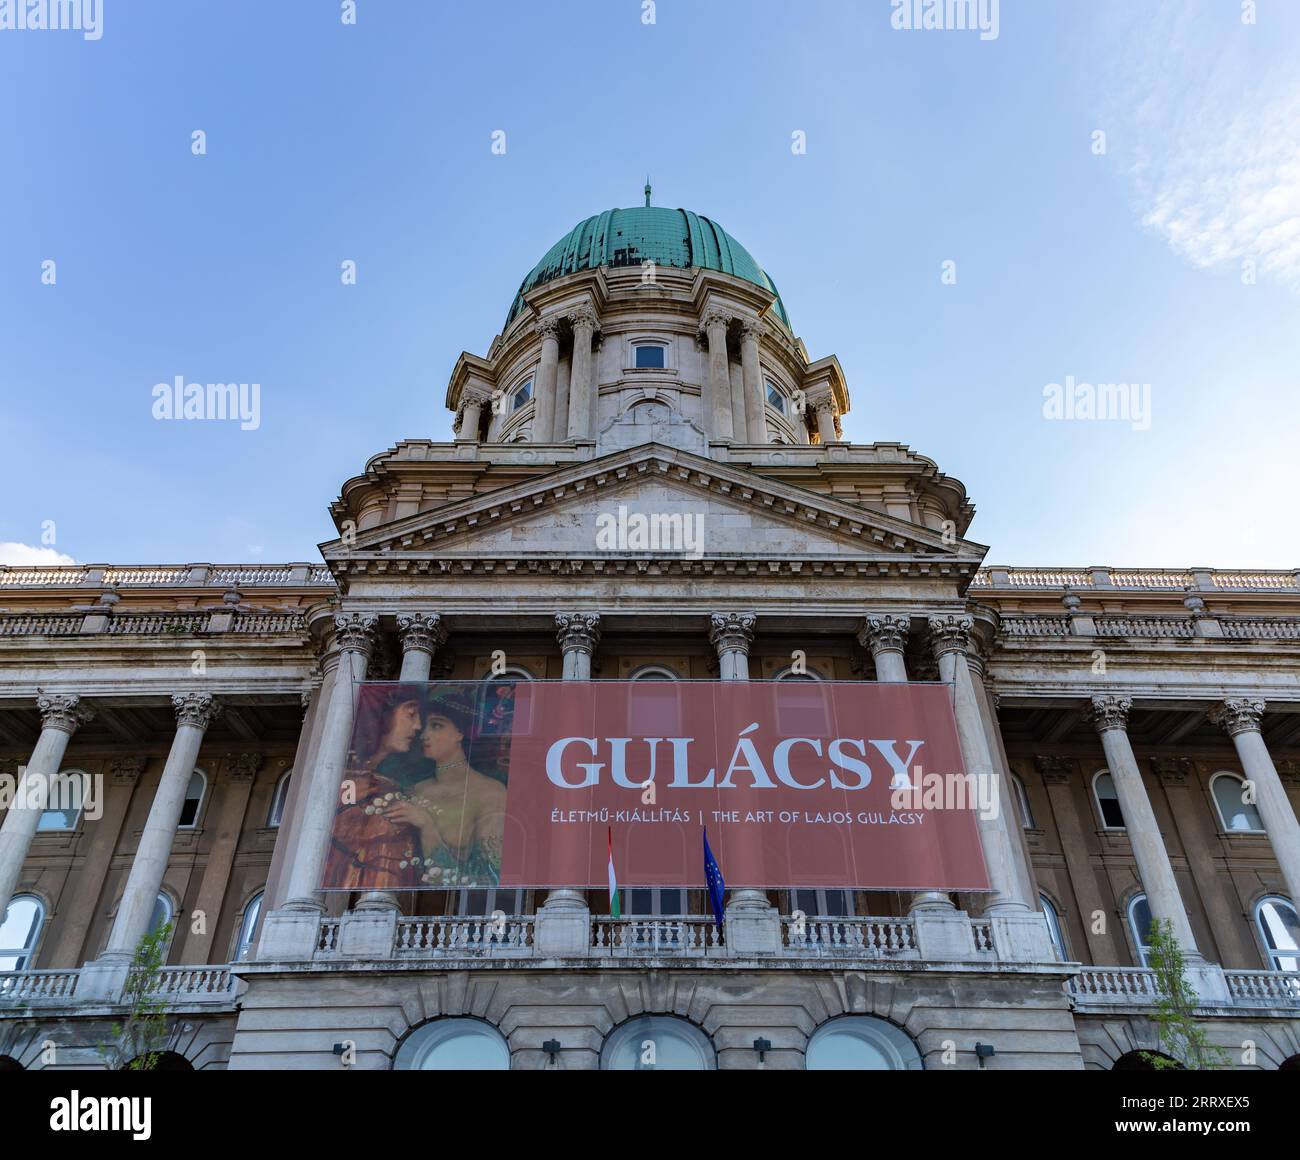 Ein Bild der Burg Buda und der Ungarischen Nationalgalerie mit dem Banner der Lajos Gulacsy-Ausstellung. Stockfoto